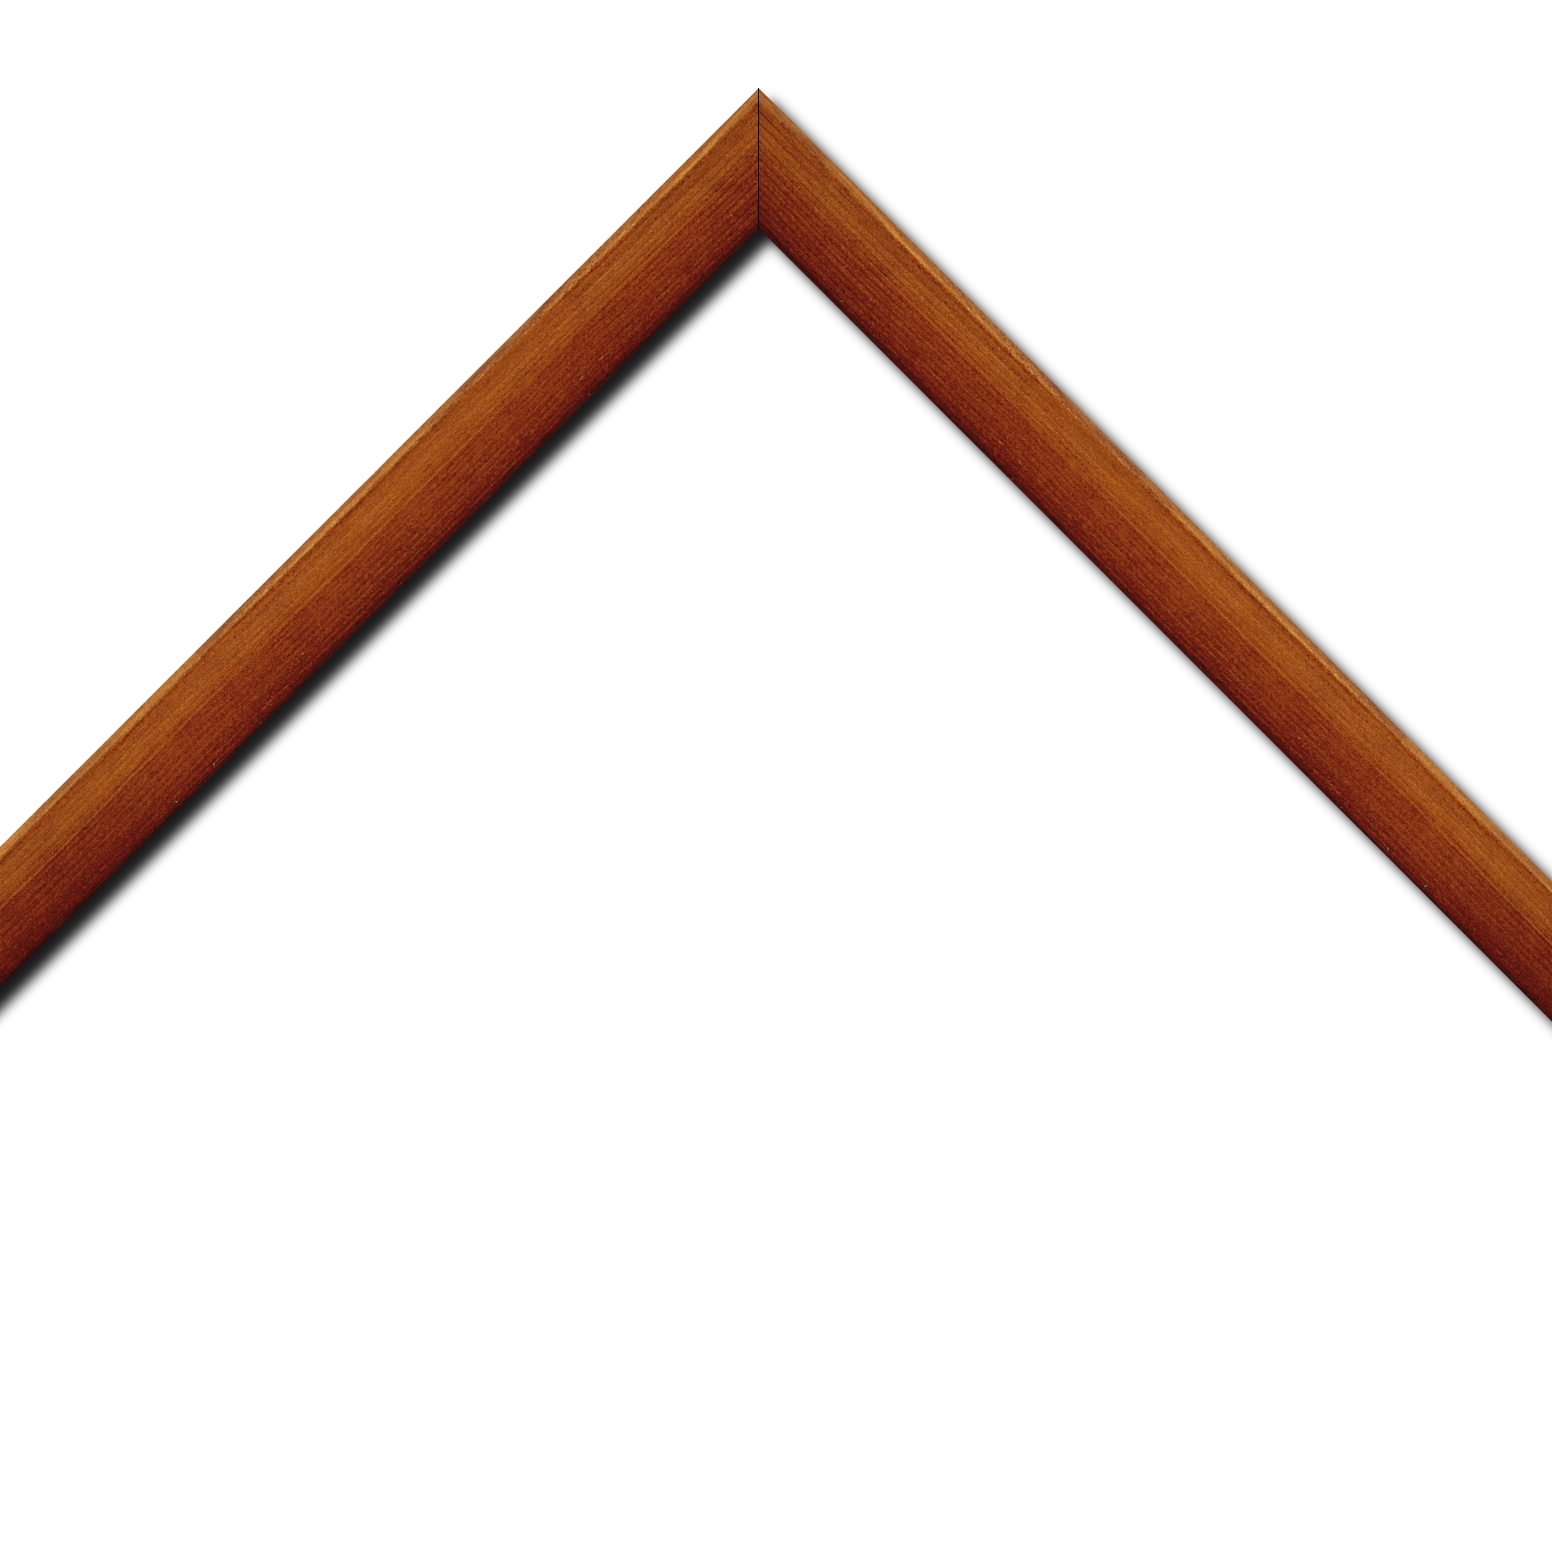 Baguette bois profil arrondi en pente plongeant largeur 2.4cm couleur marron miel finition vernis brillant,veine du bois  apparent (pin) ,